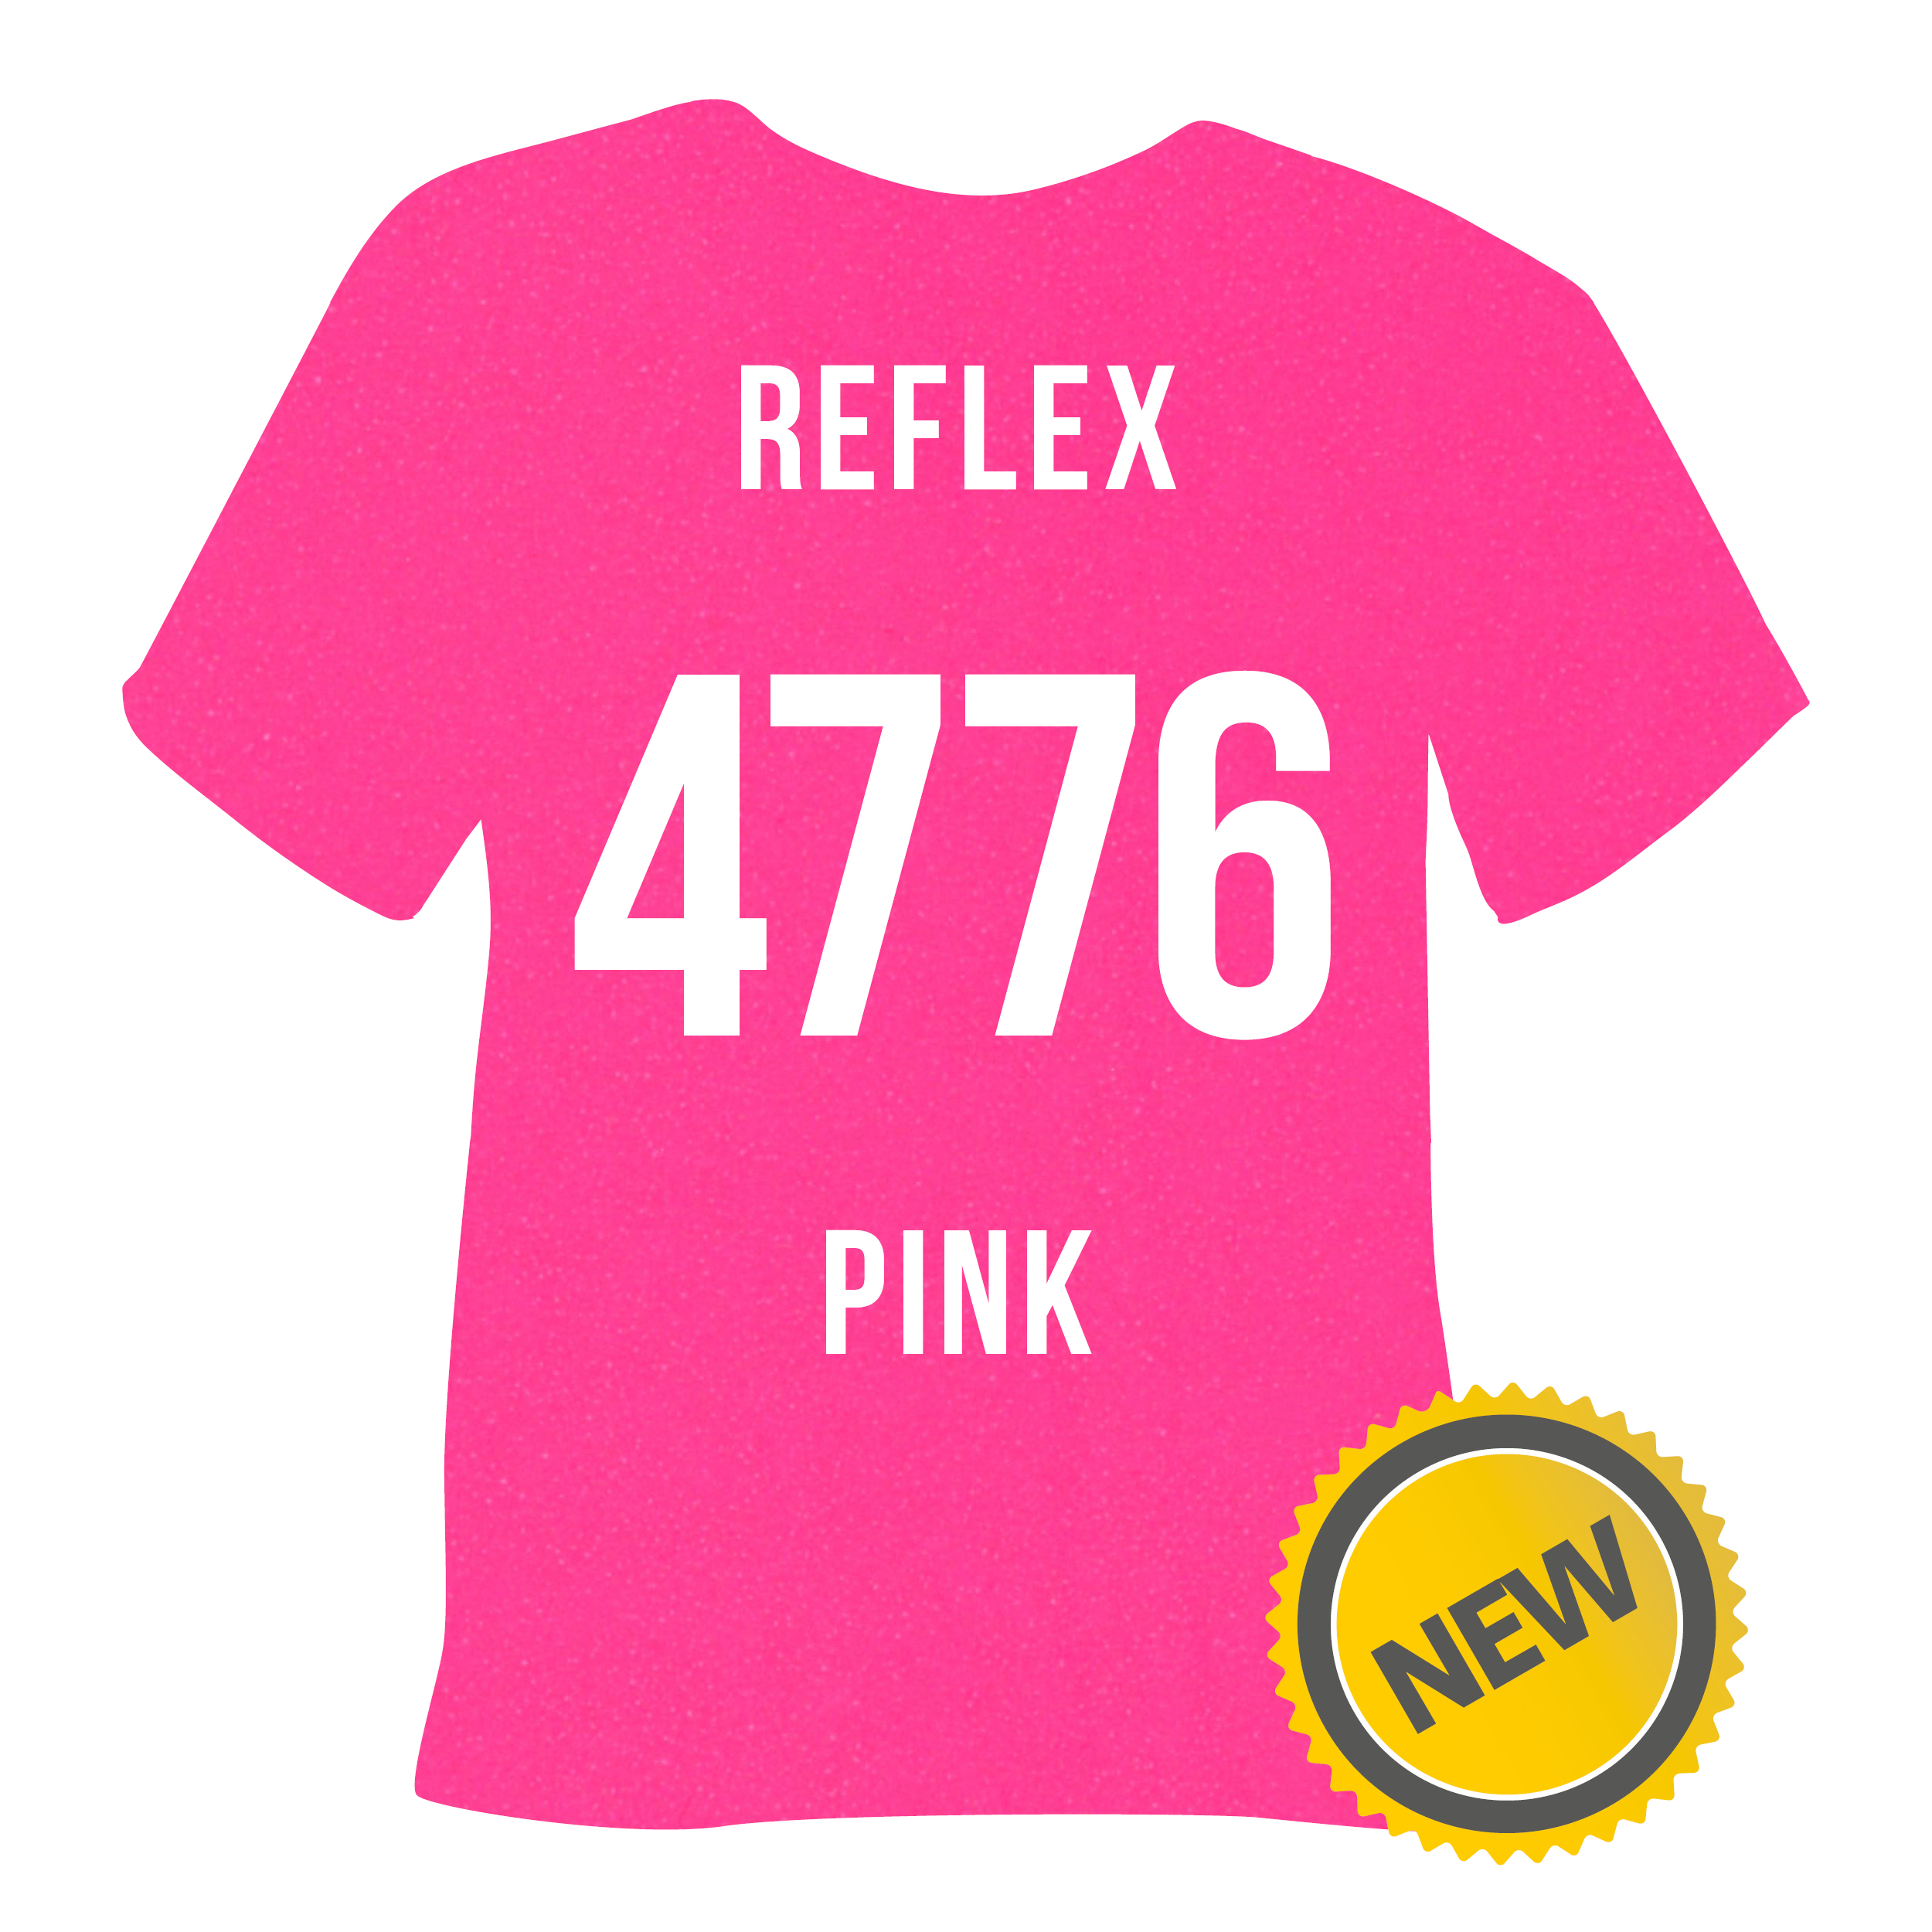 4776 Reflex Pink